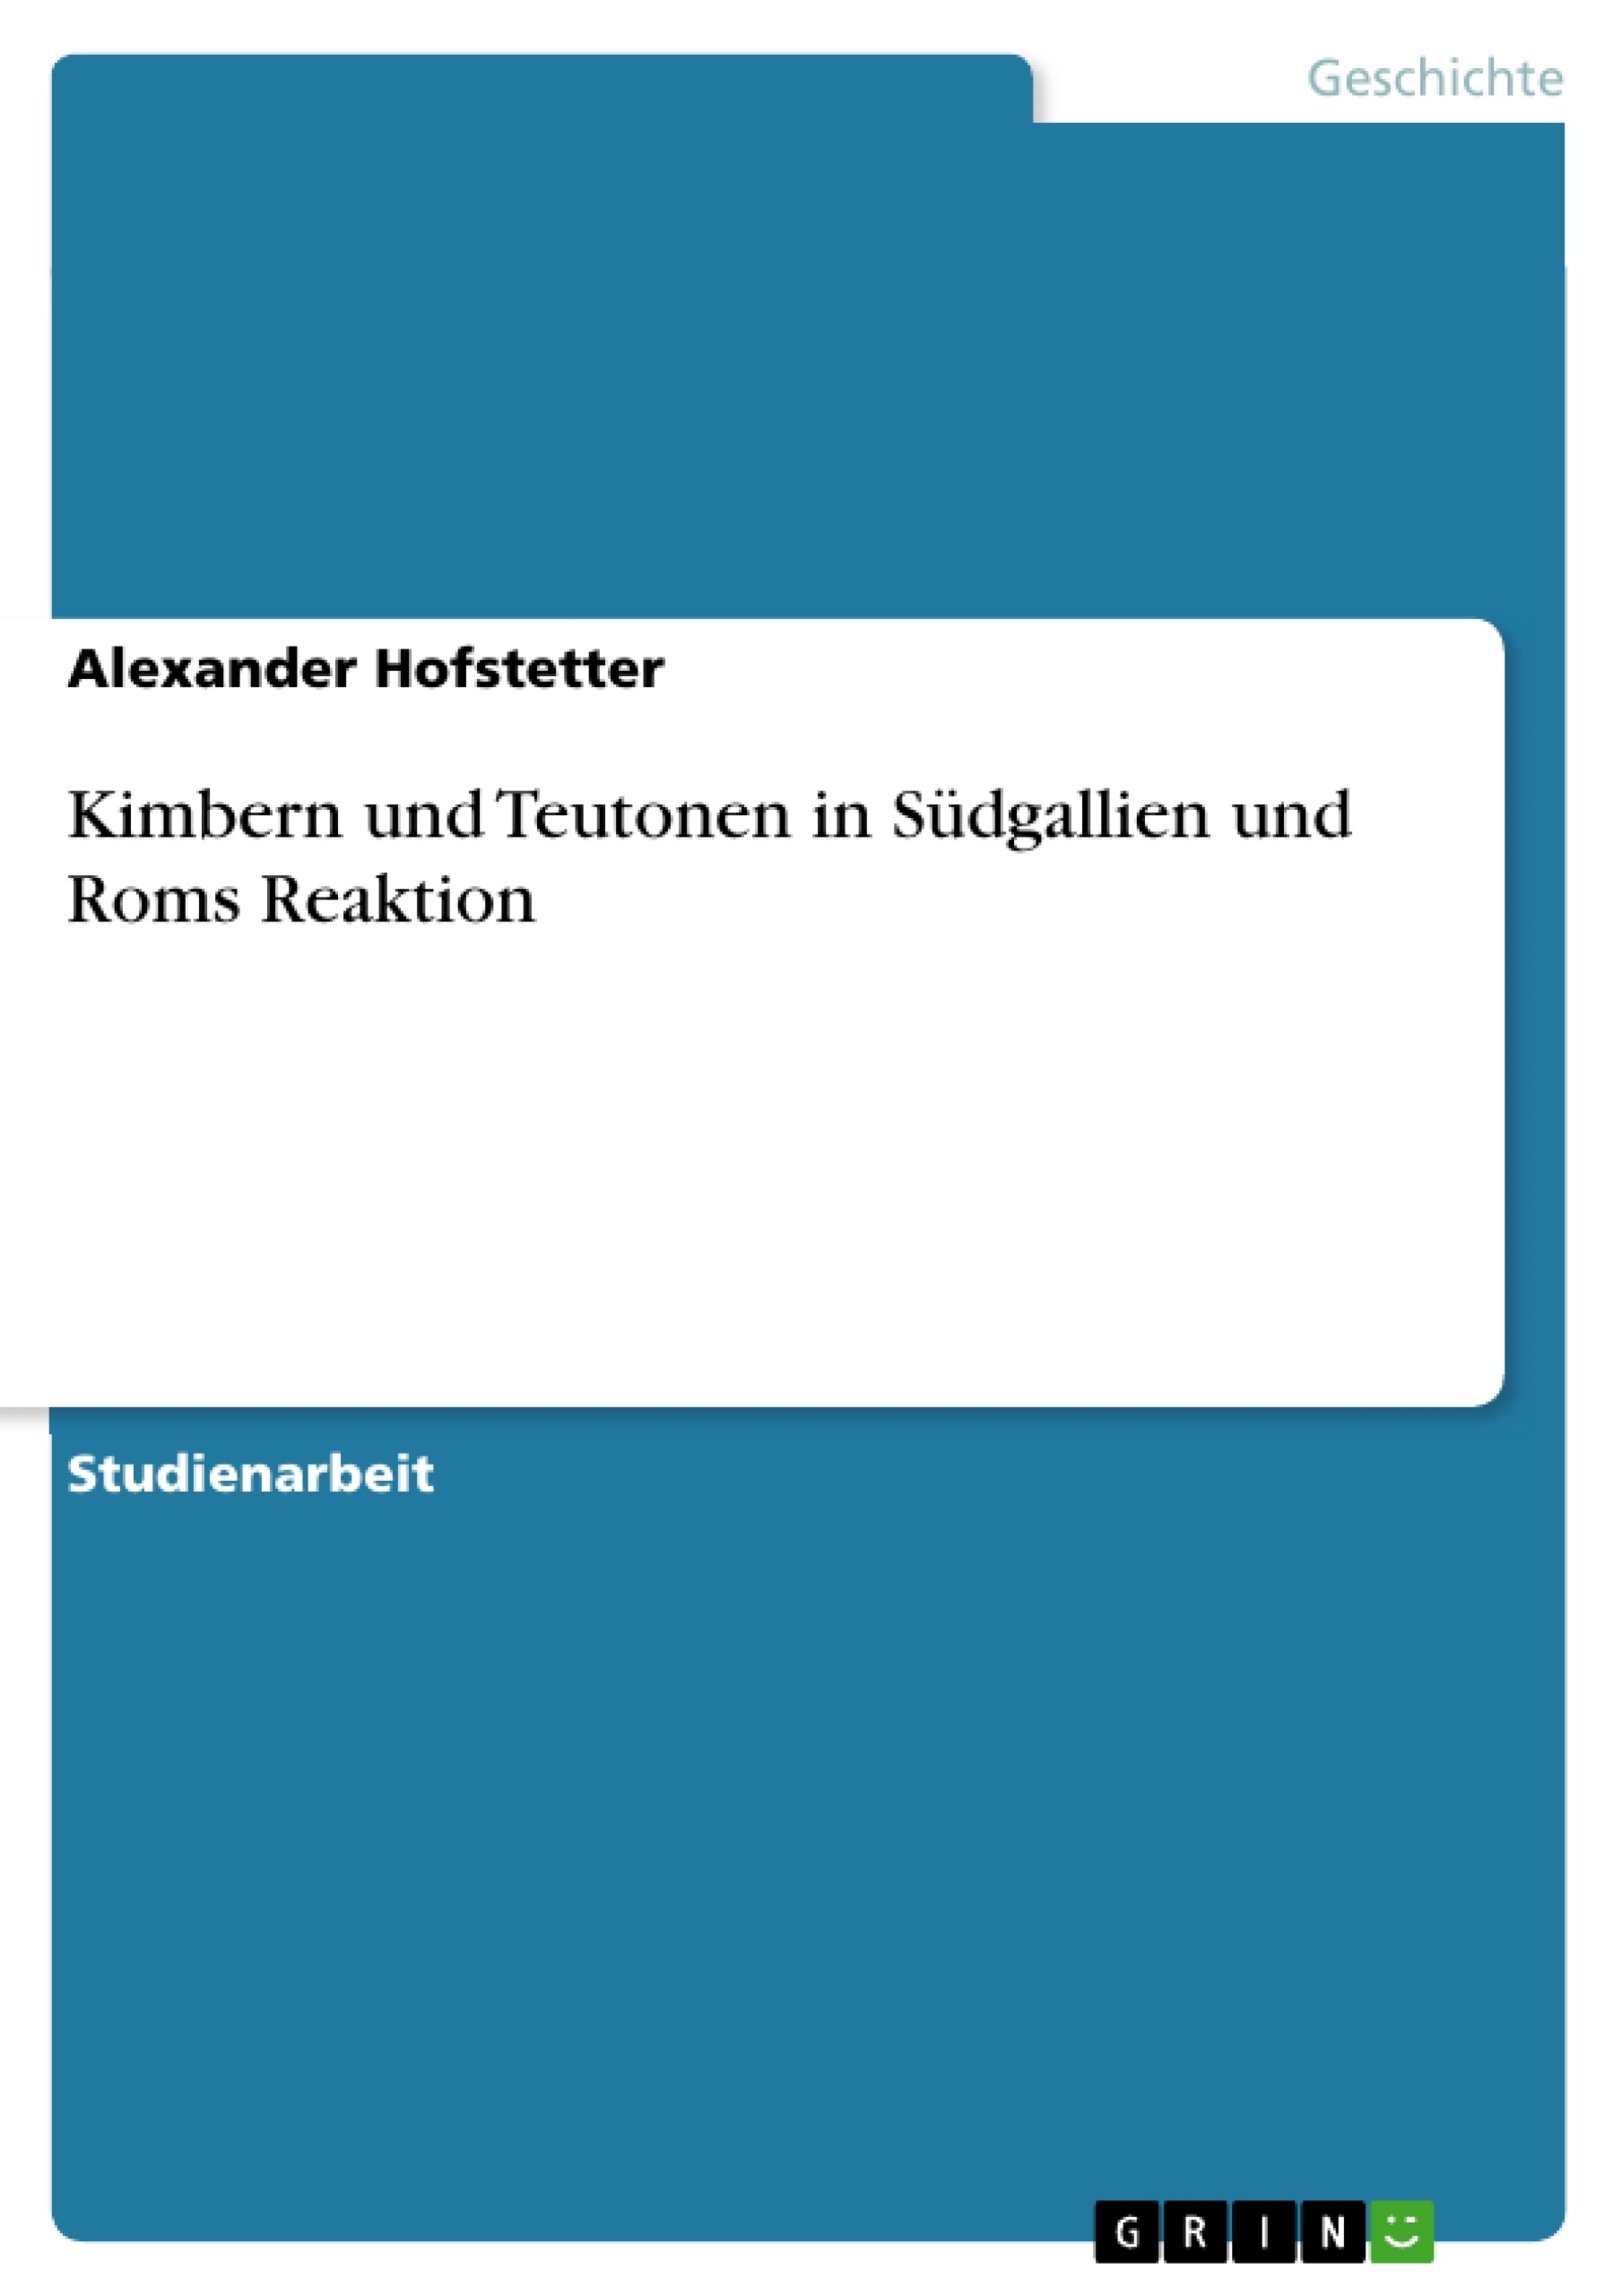 Title: Kimbern und Teutonen in Südgallien und Roms Reaktion